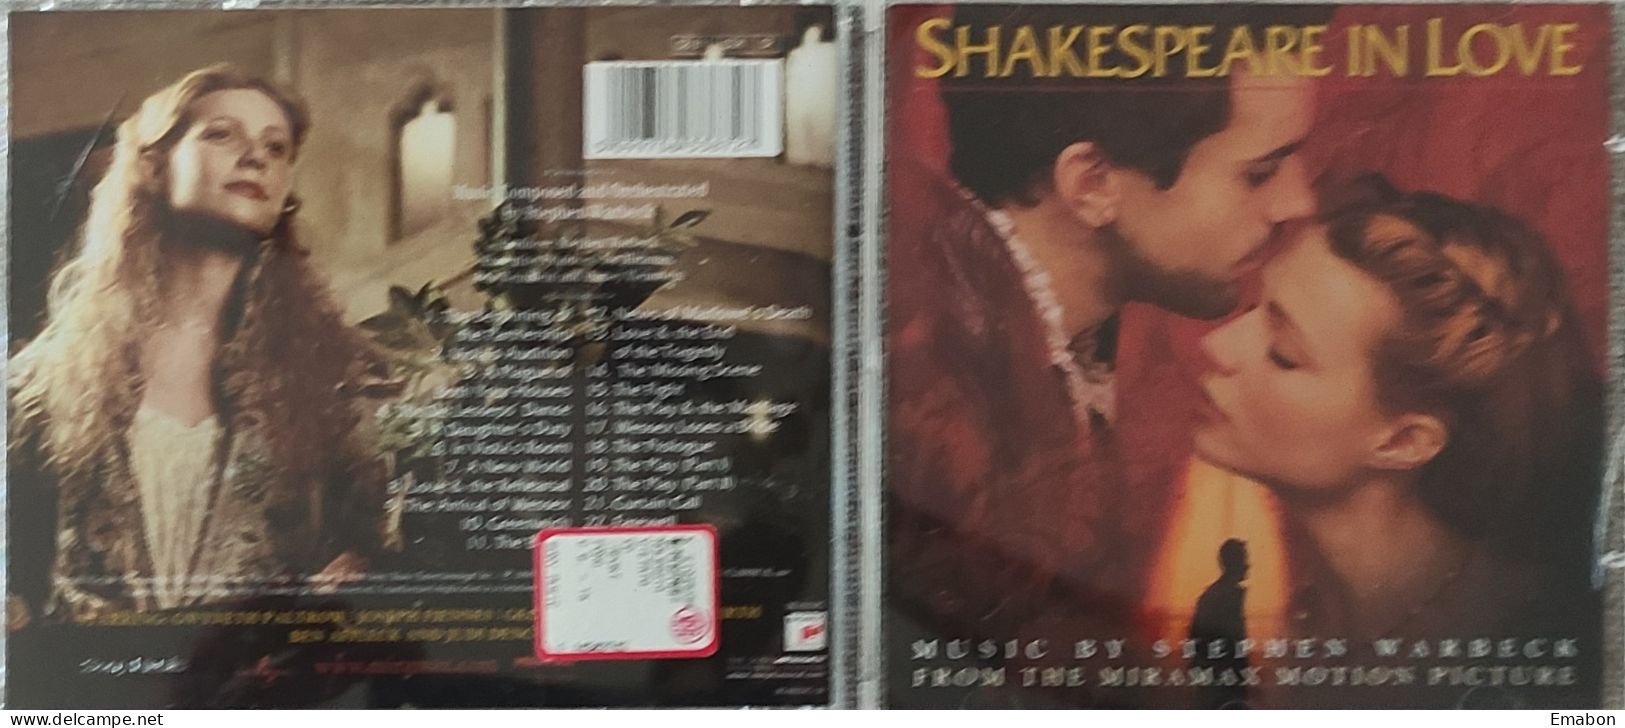 BORGATTA - FILM MUSIC  - Cd  STEPHEN WARBECK - SHAKESPEARE IN LOVE - SONY CLASSICAL 1998 - USATO In Buono Stato - Musica Di Film